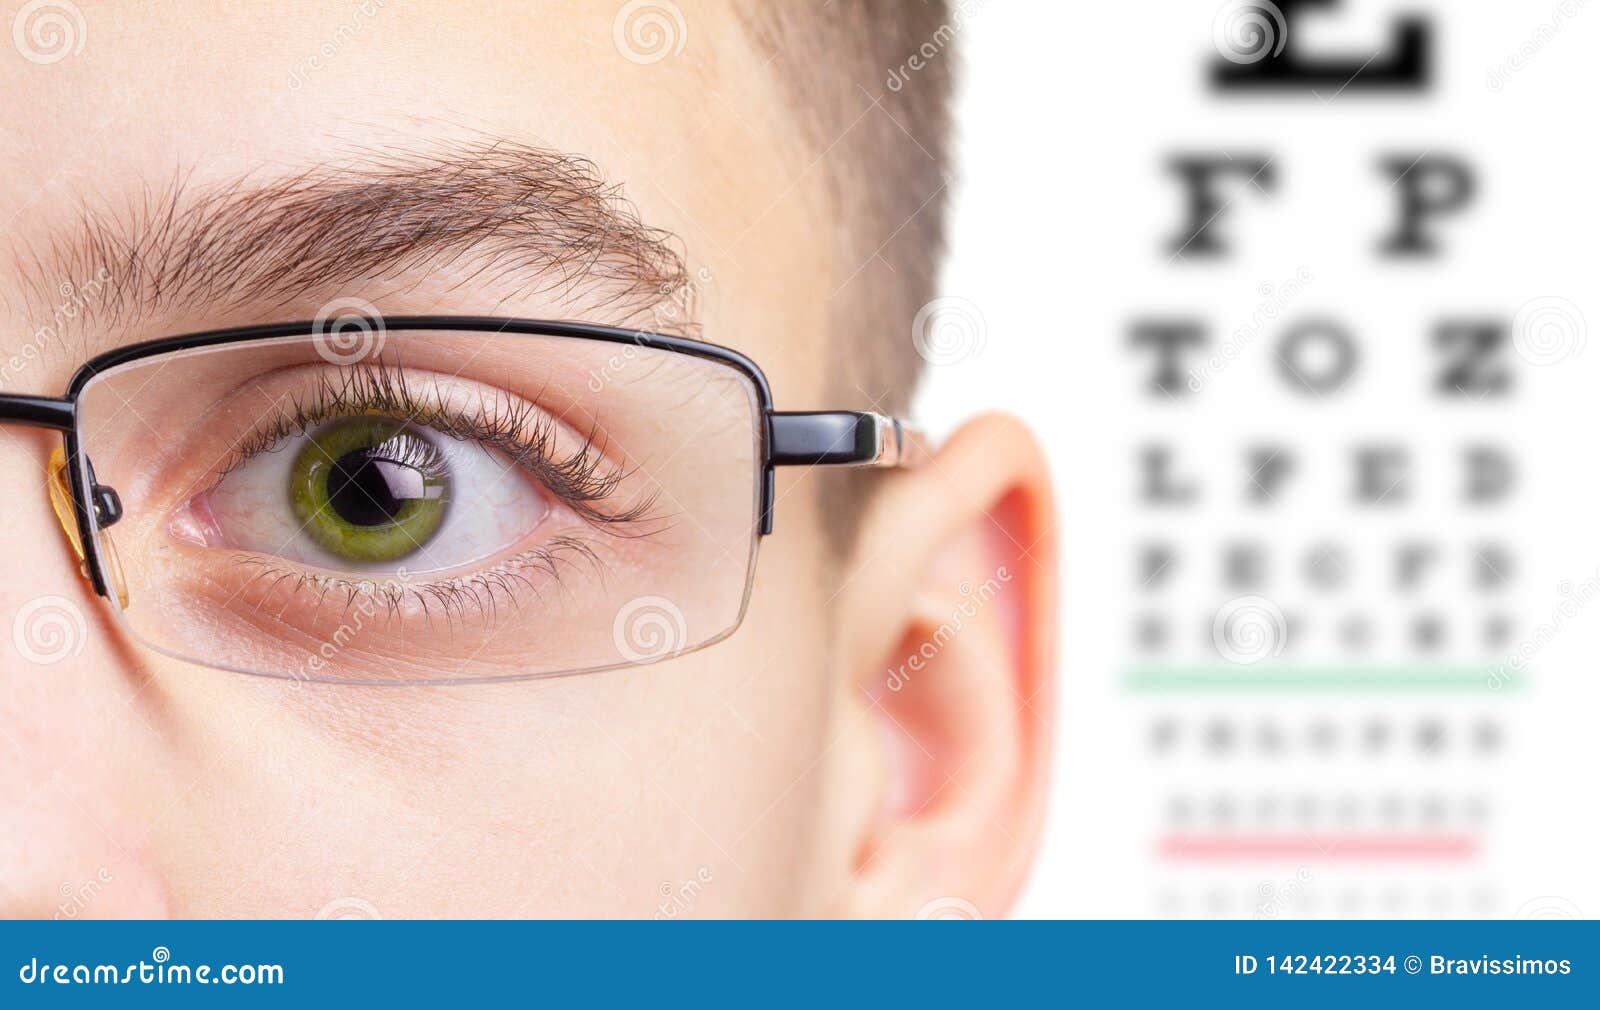 Начала падать зрение. Тест на очки для зрения. Контактные линзы корейские близорукость. Поляризационные линзы оптометрия. Магнитные очки для глаз для зрения.